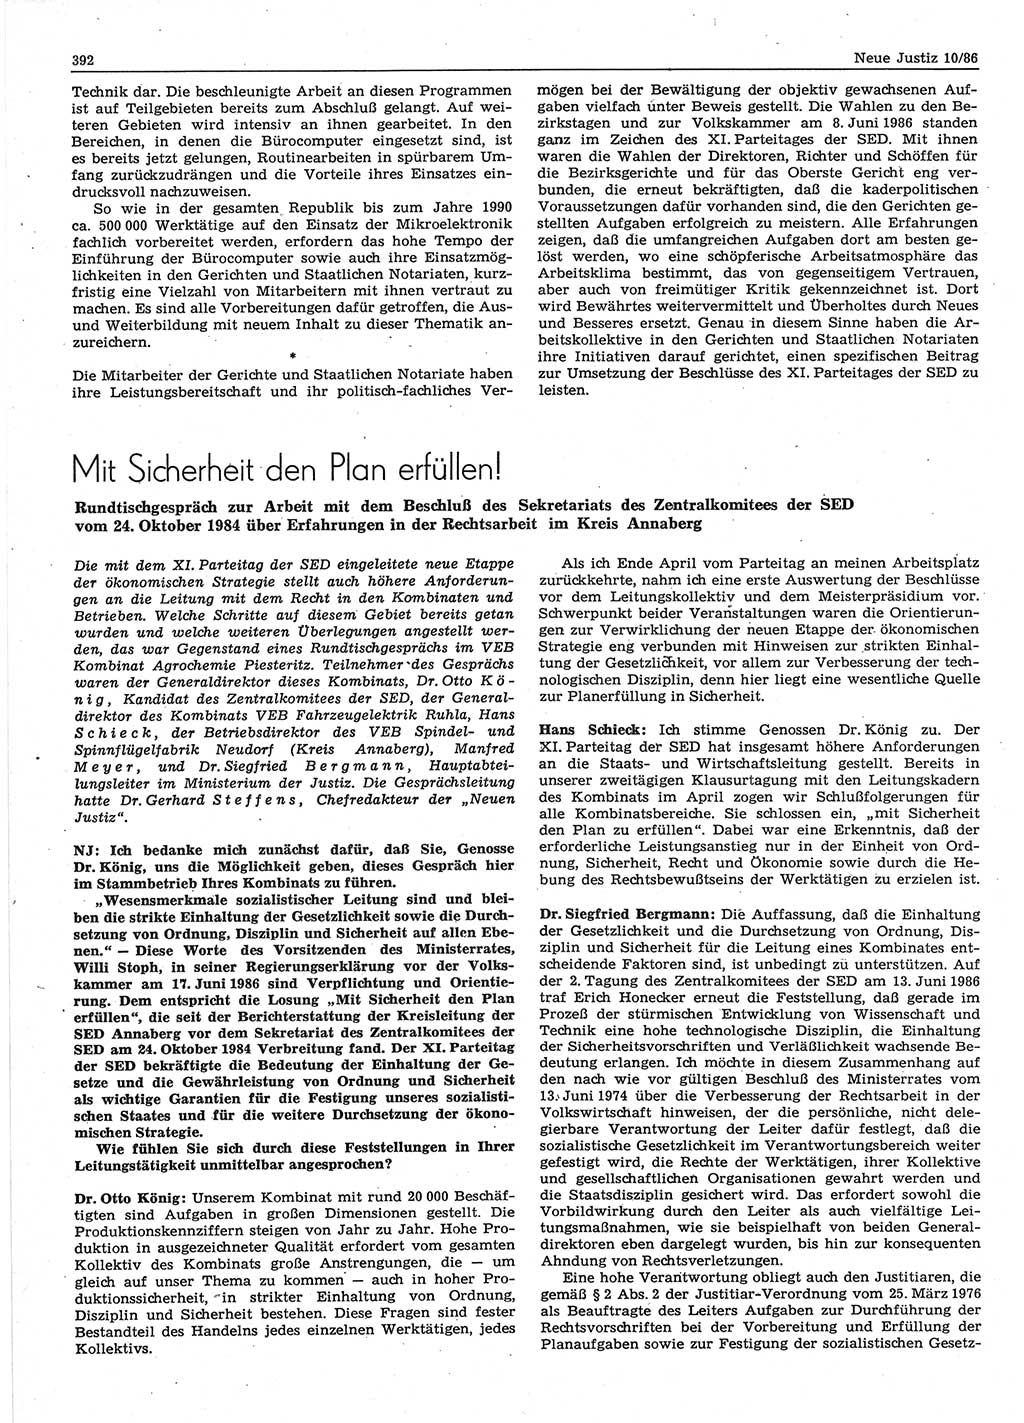 Neue Justiz (NJ), Zeitschrift für sozialistisches Recht und Gesetzlichkeit [Deutsche Demokratische Republik (DDR)], 40. Jahrgang 1986, Seite 392 (NJ DDR 1986, S. 392)